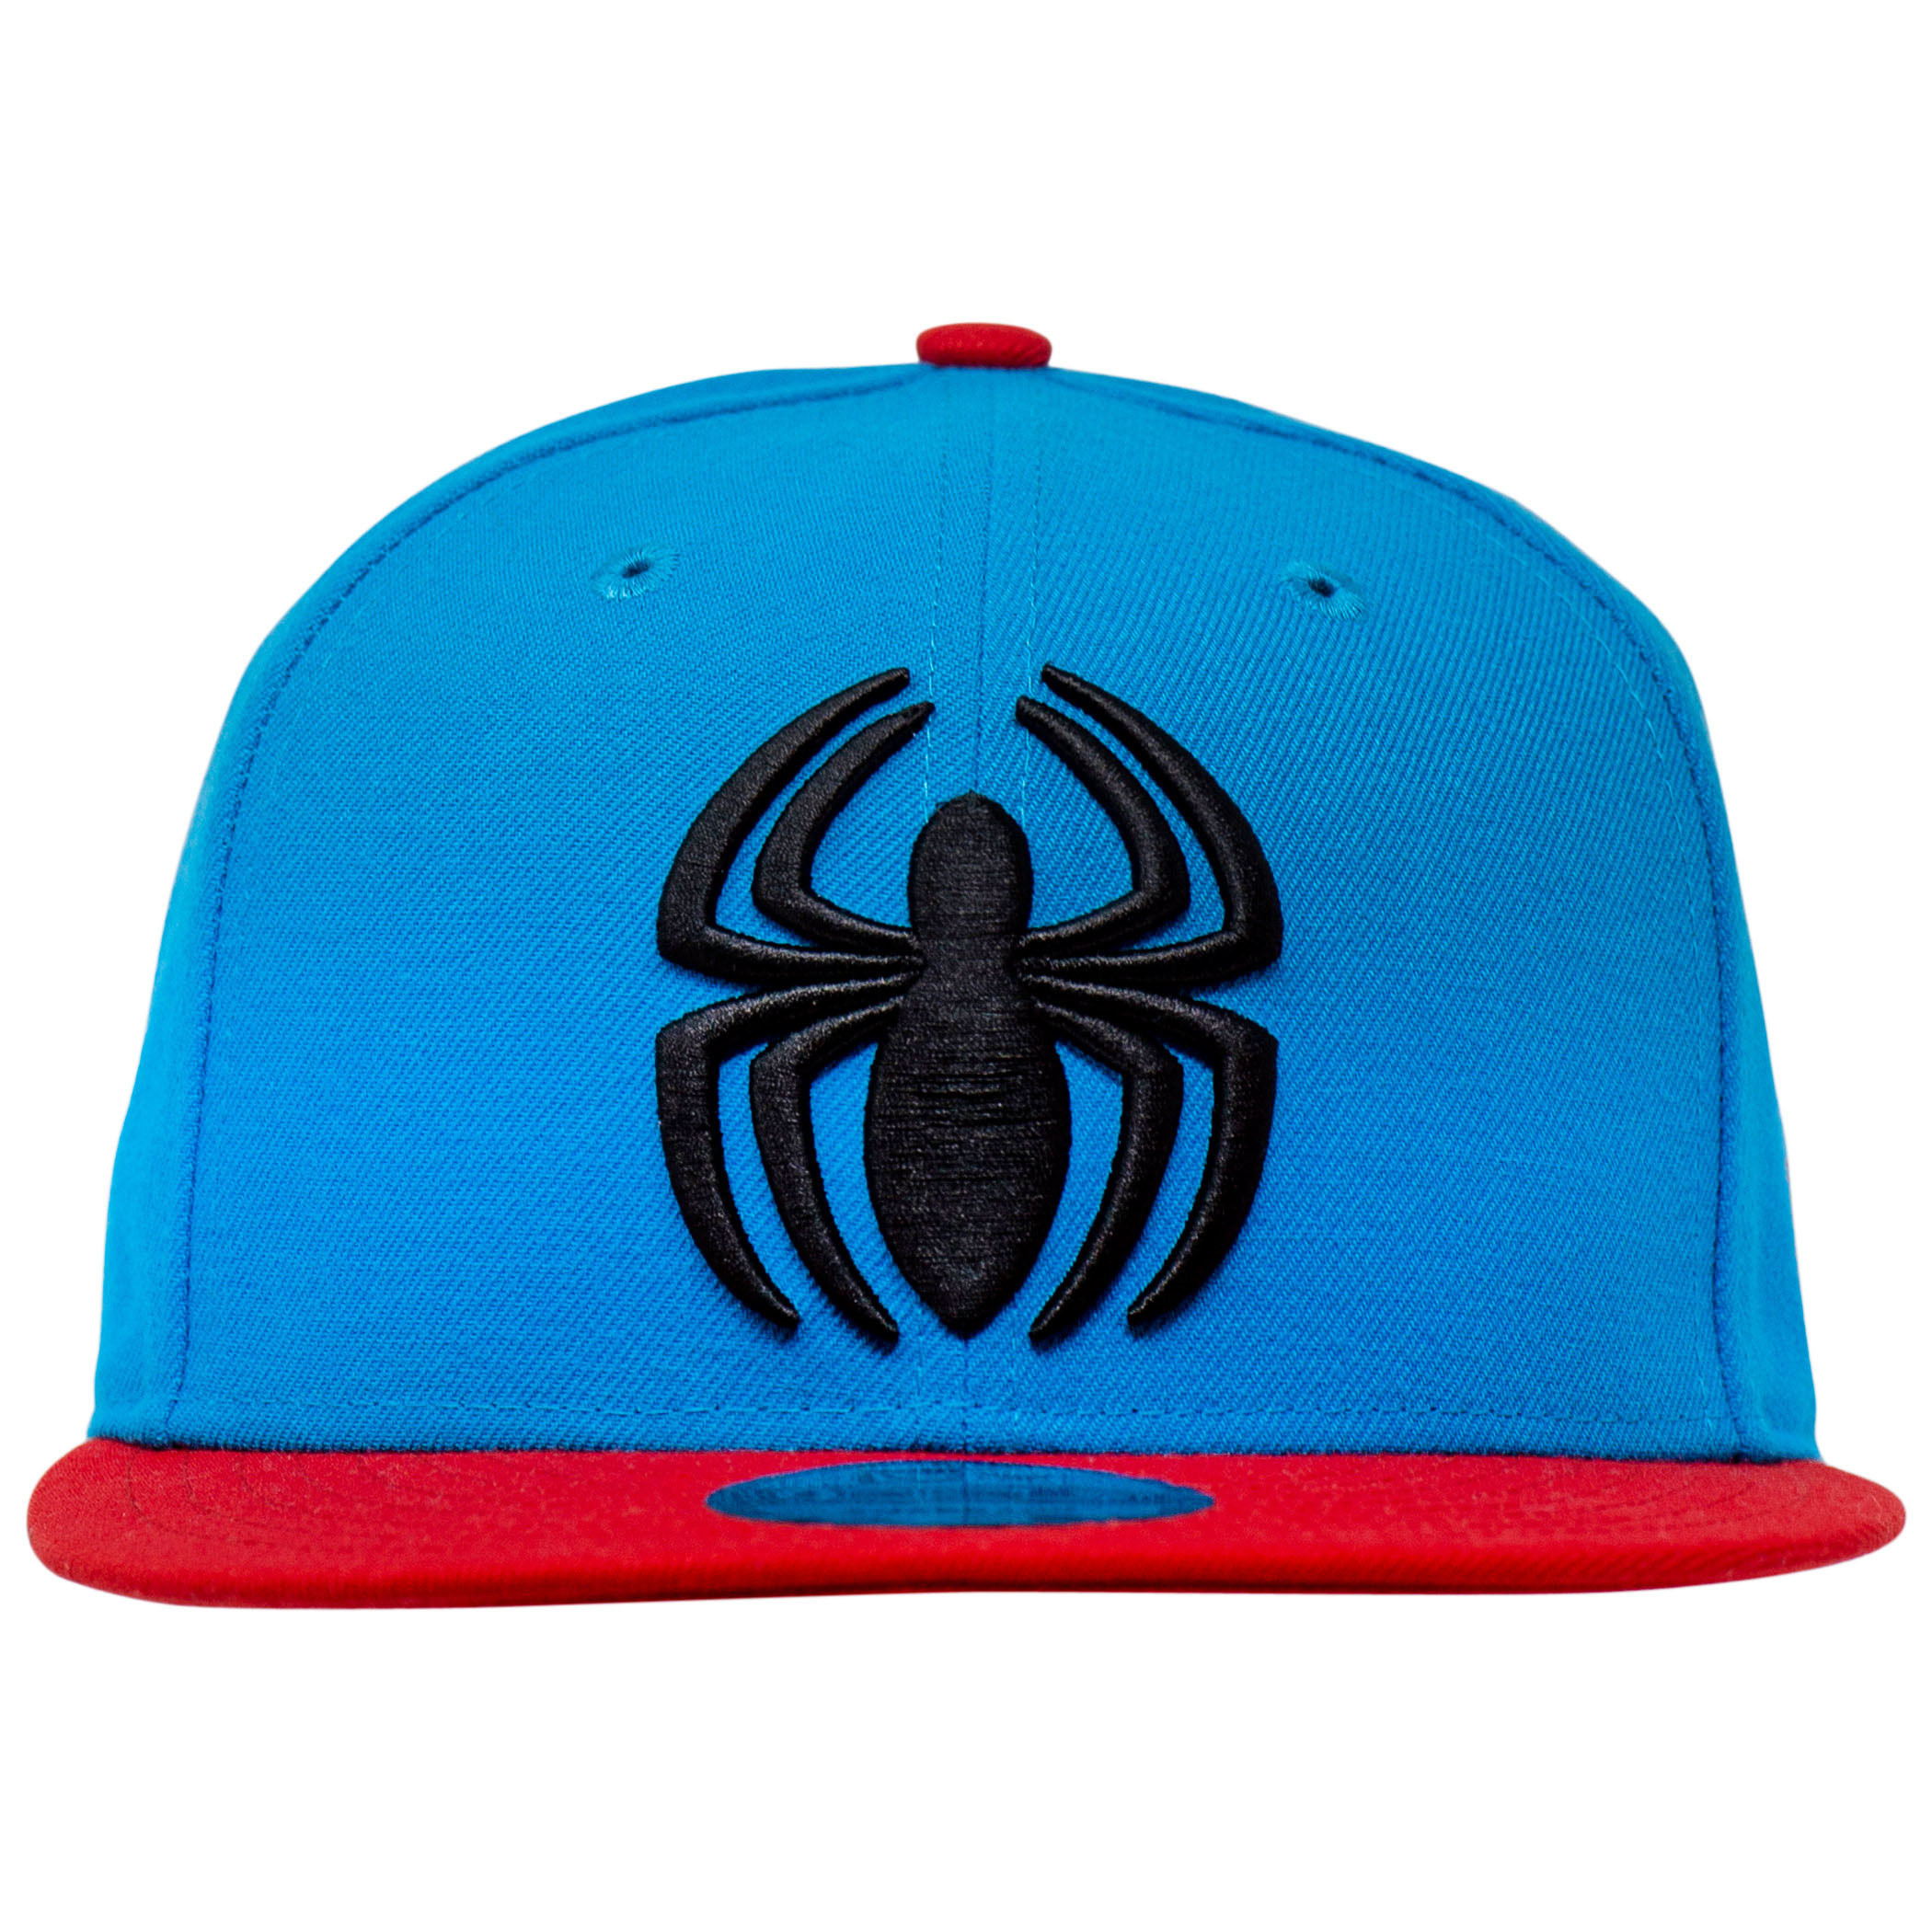 Spider-Man Scarlet Spider New Era 9Fifty Adjustable Hat